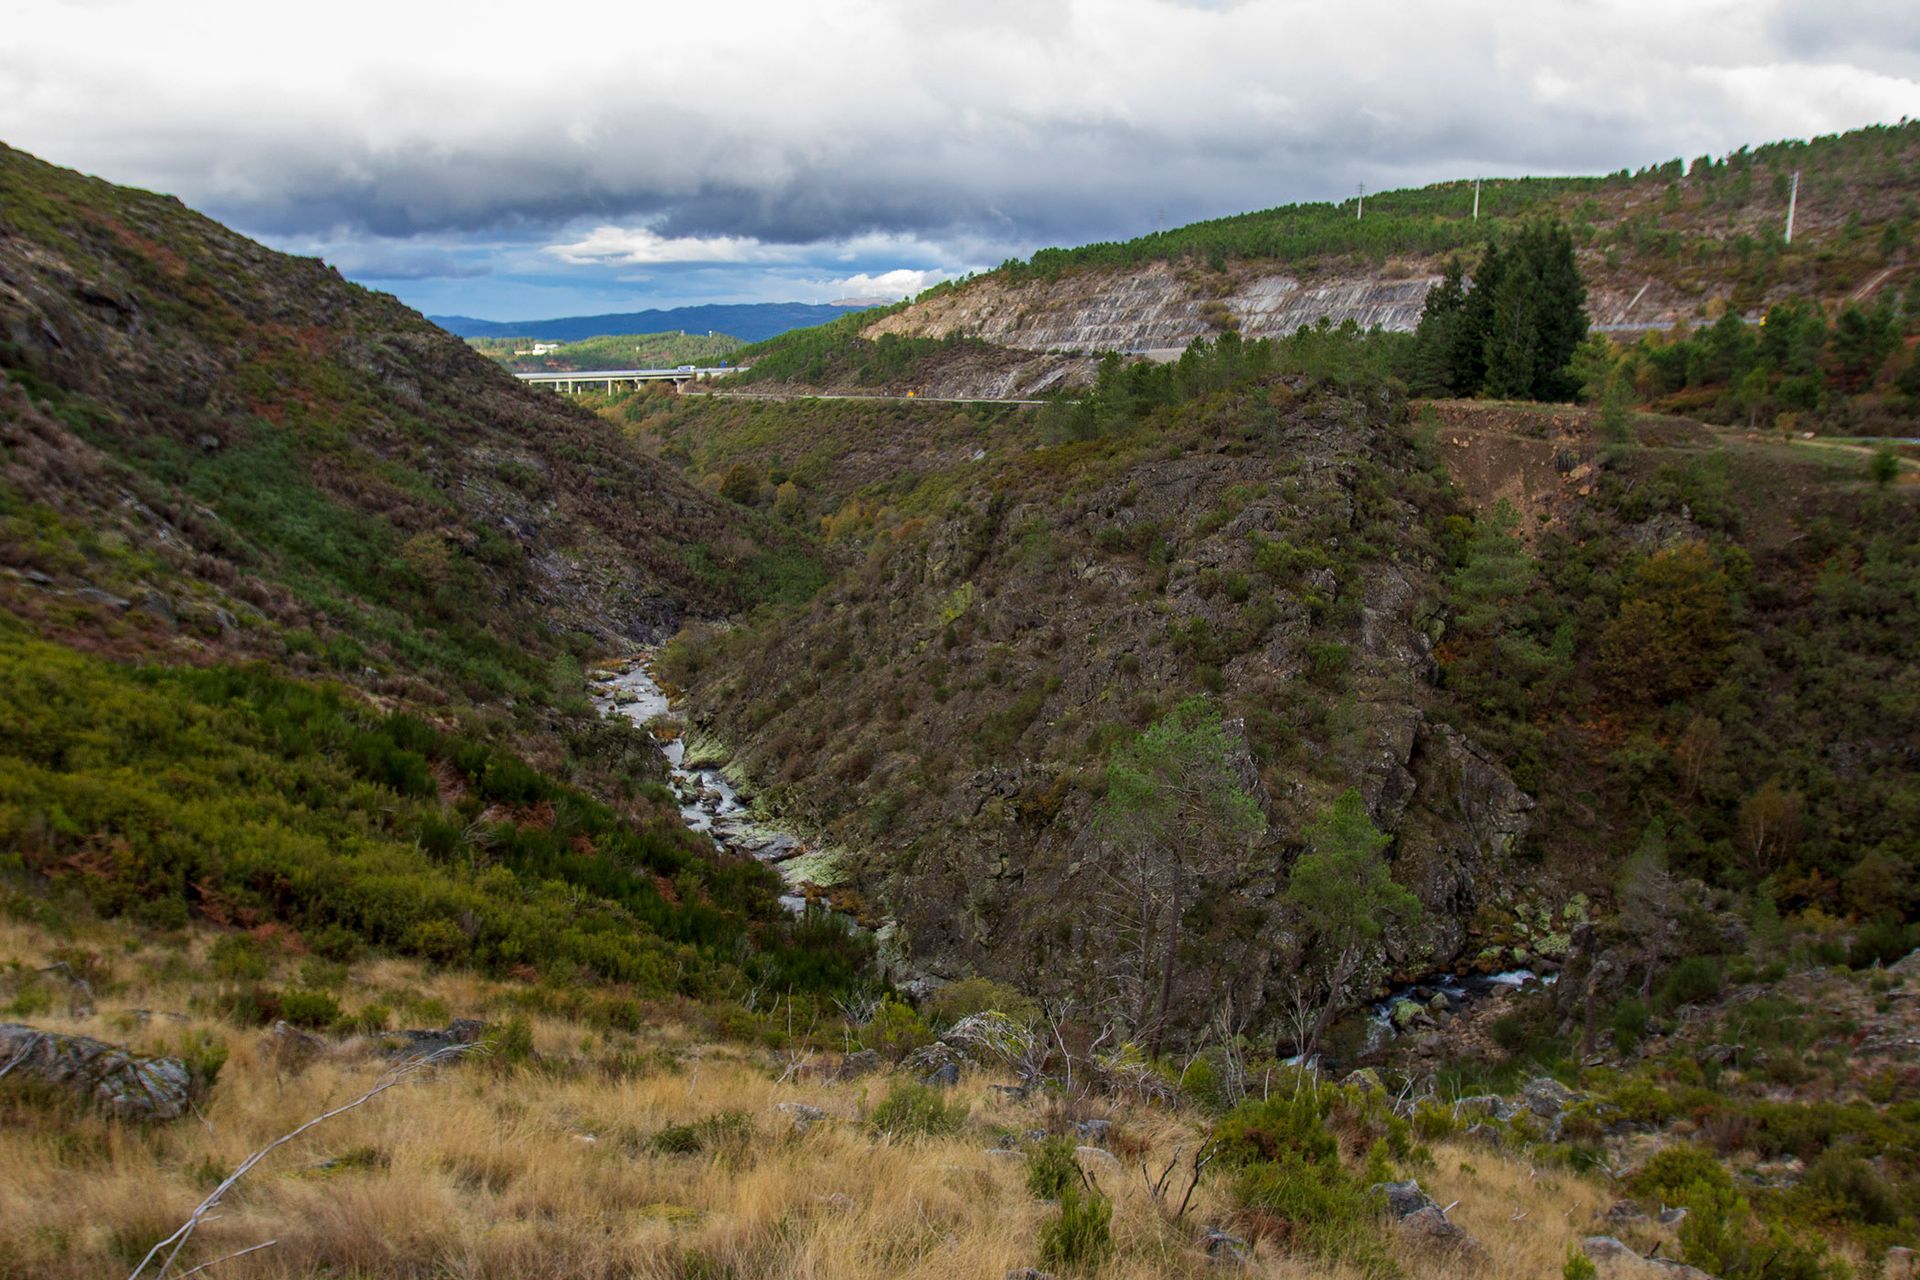 Image de la vallée du Lourêdo à Ribeira de Pena avec la rivière Lourêdo serpentant sur les pentes de